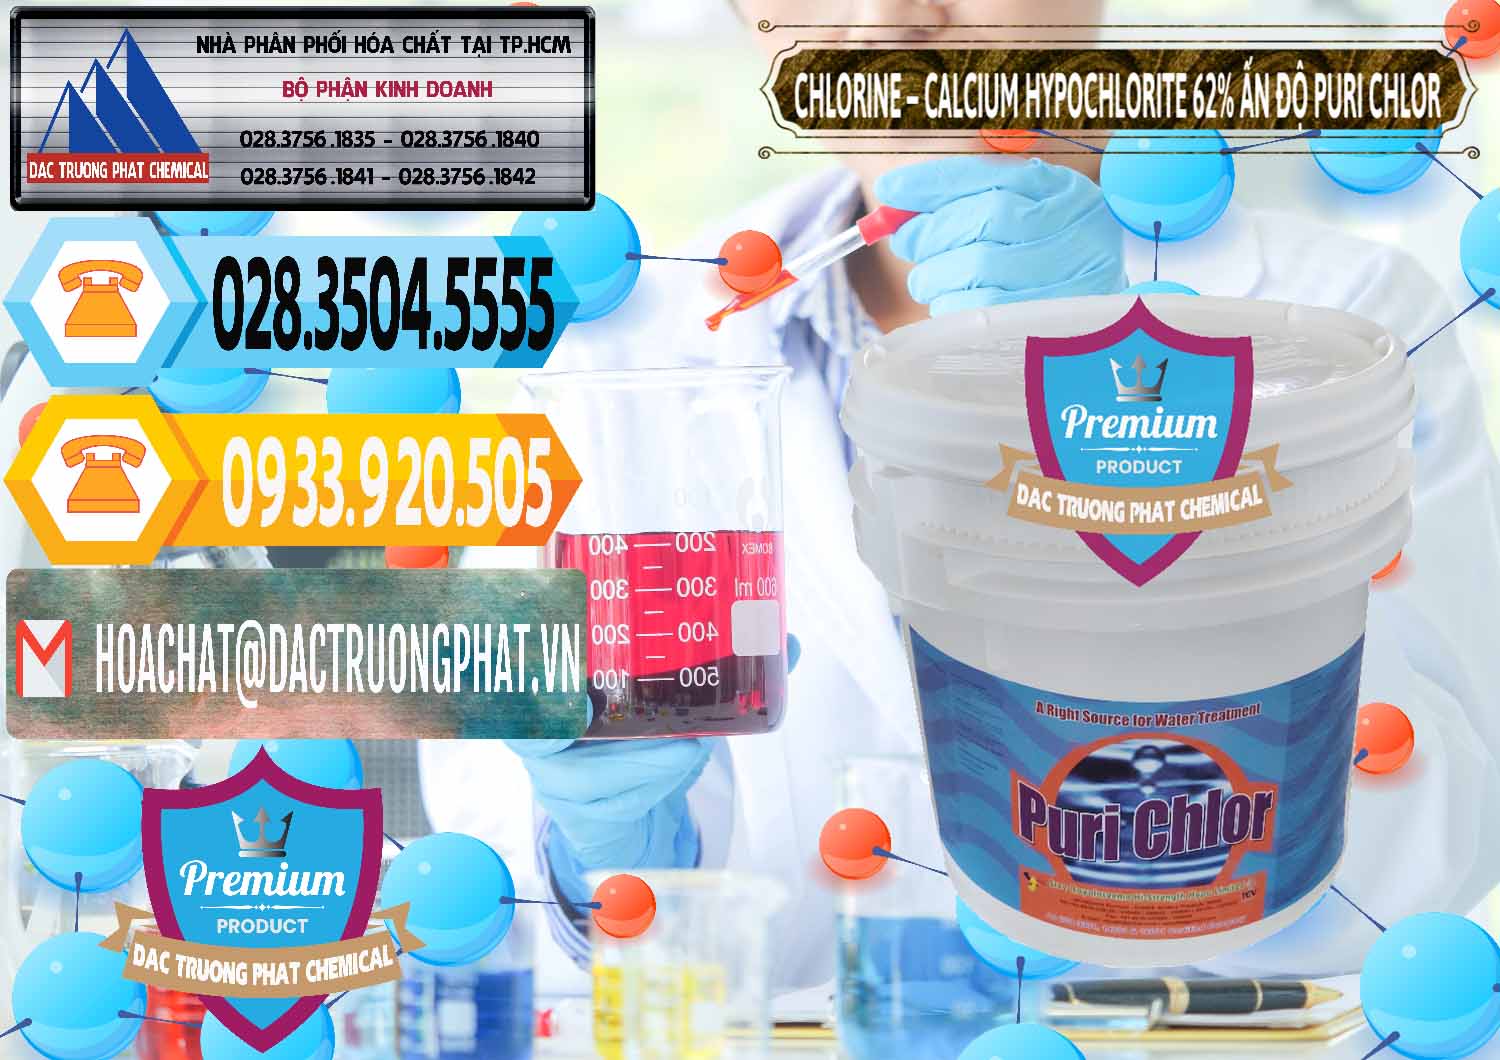 Nơi chuyên phân phối - bán Chlorine – Clorin 62% Puri Chlo Ấn Độ India - 0052 - Công ty chuyên nhập khẩu & phân phối hóa chất tại TP.HCM - hoachattayrua.net